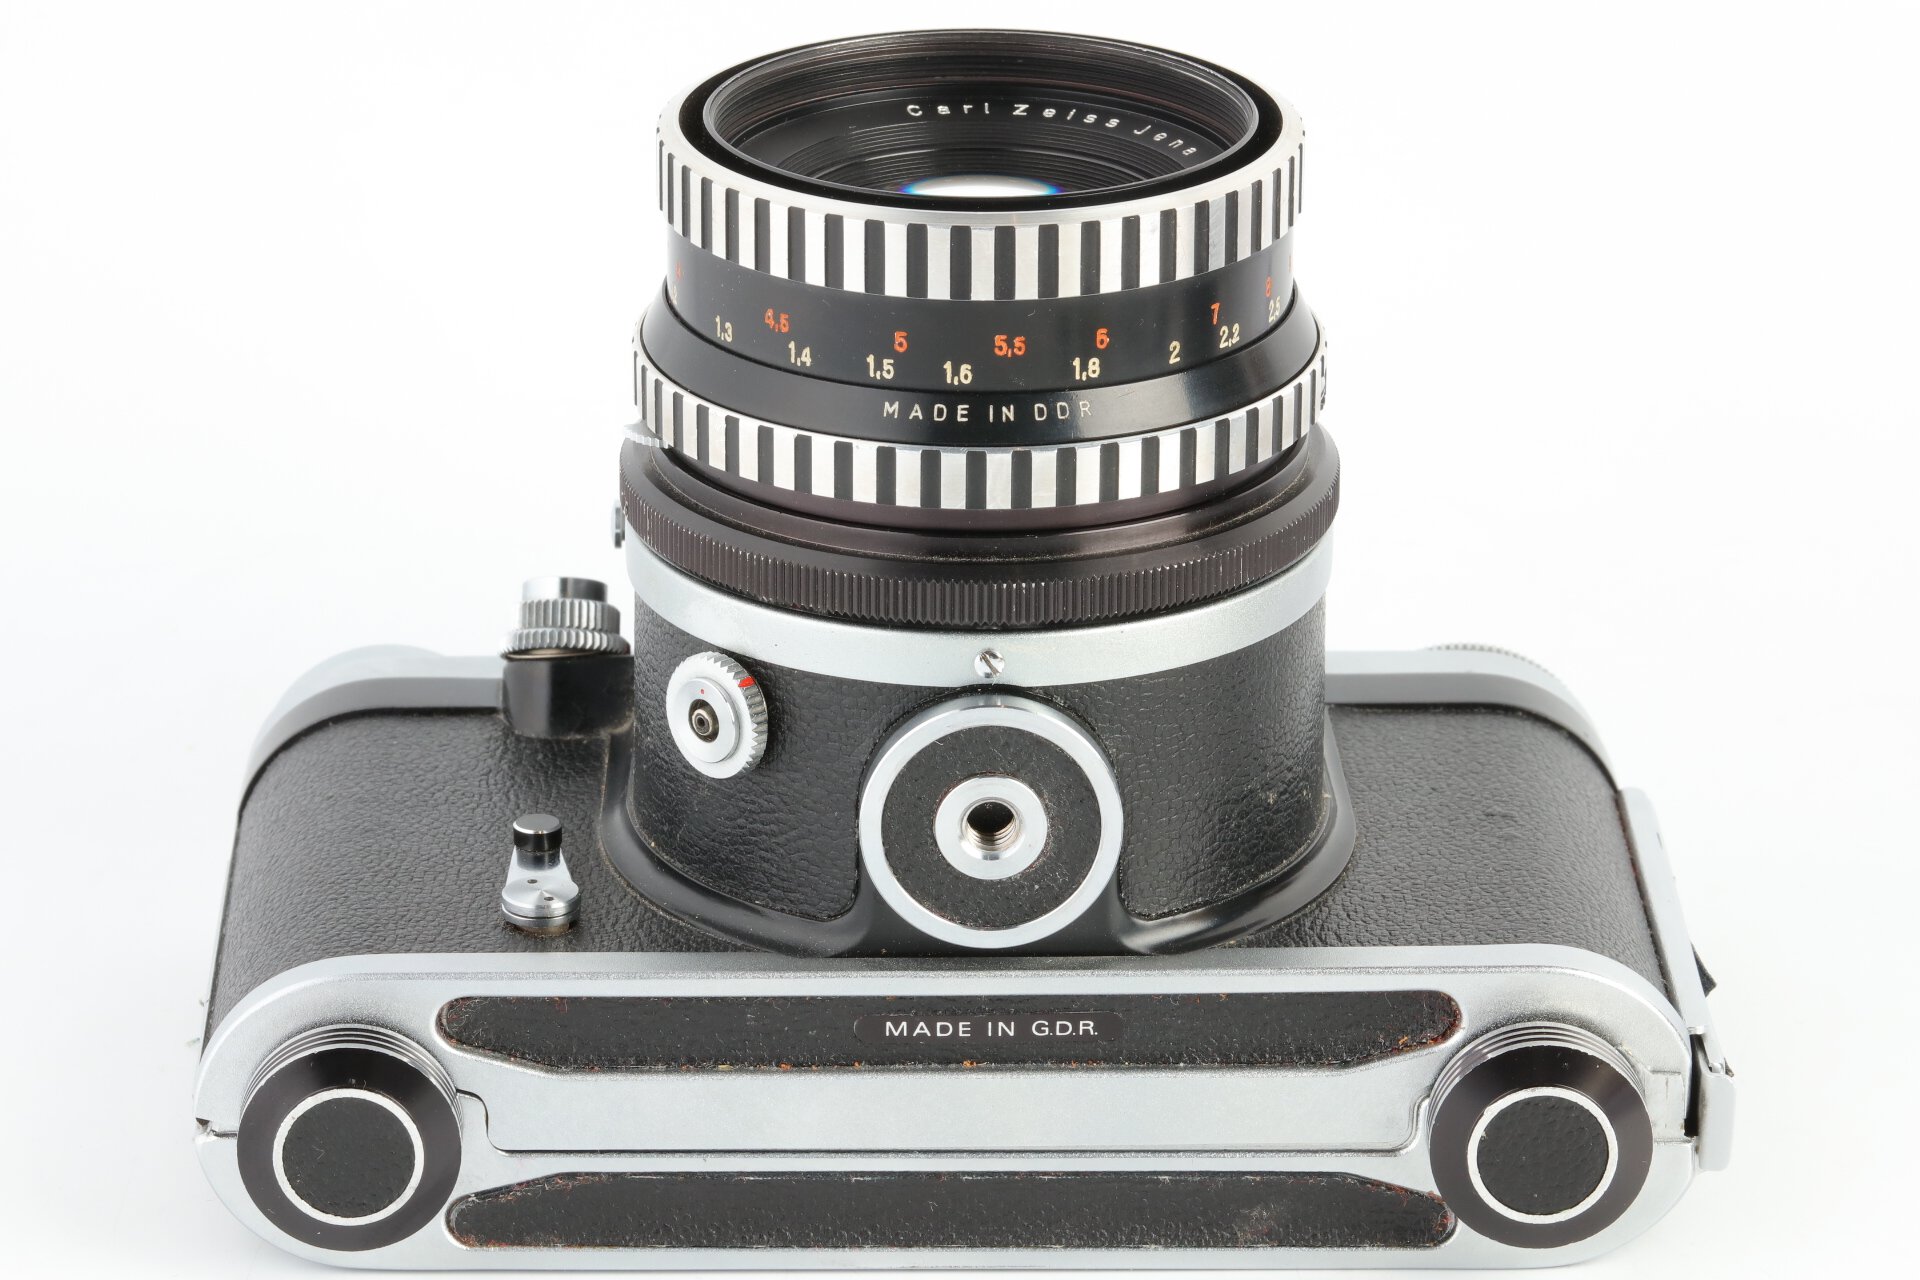 Pentacon SIX TL 6x6 Kamera + Carl Zeiss 2,8/80mm Biometar